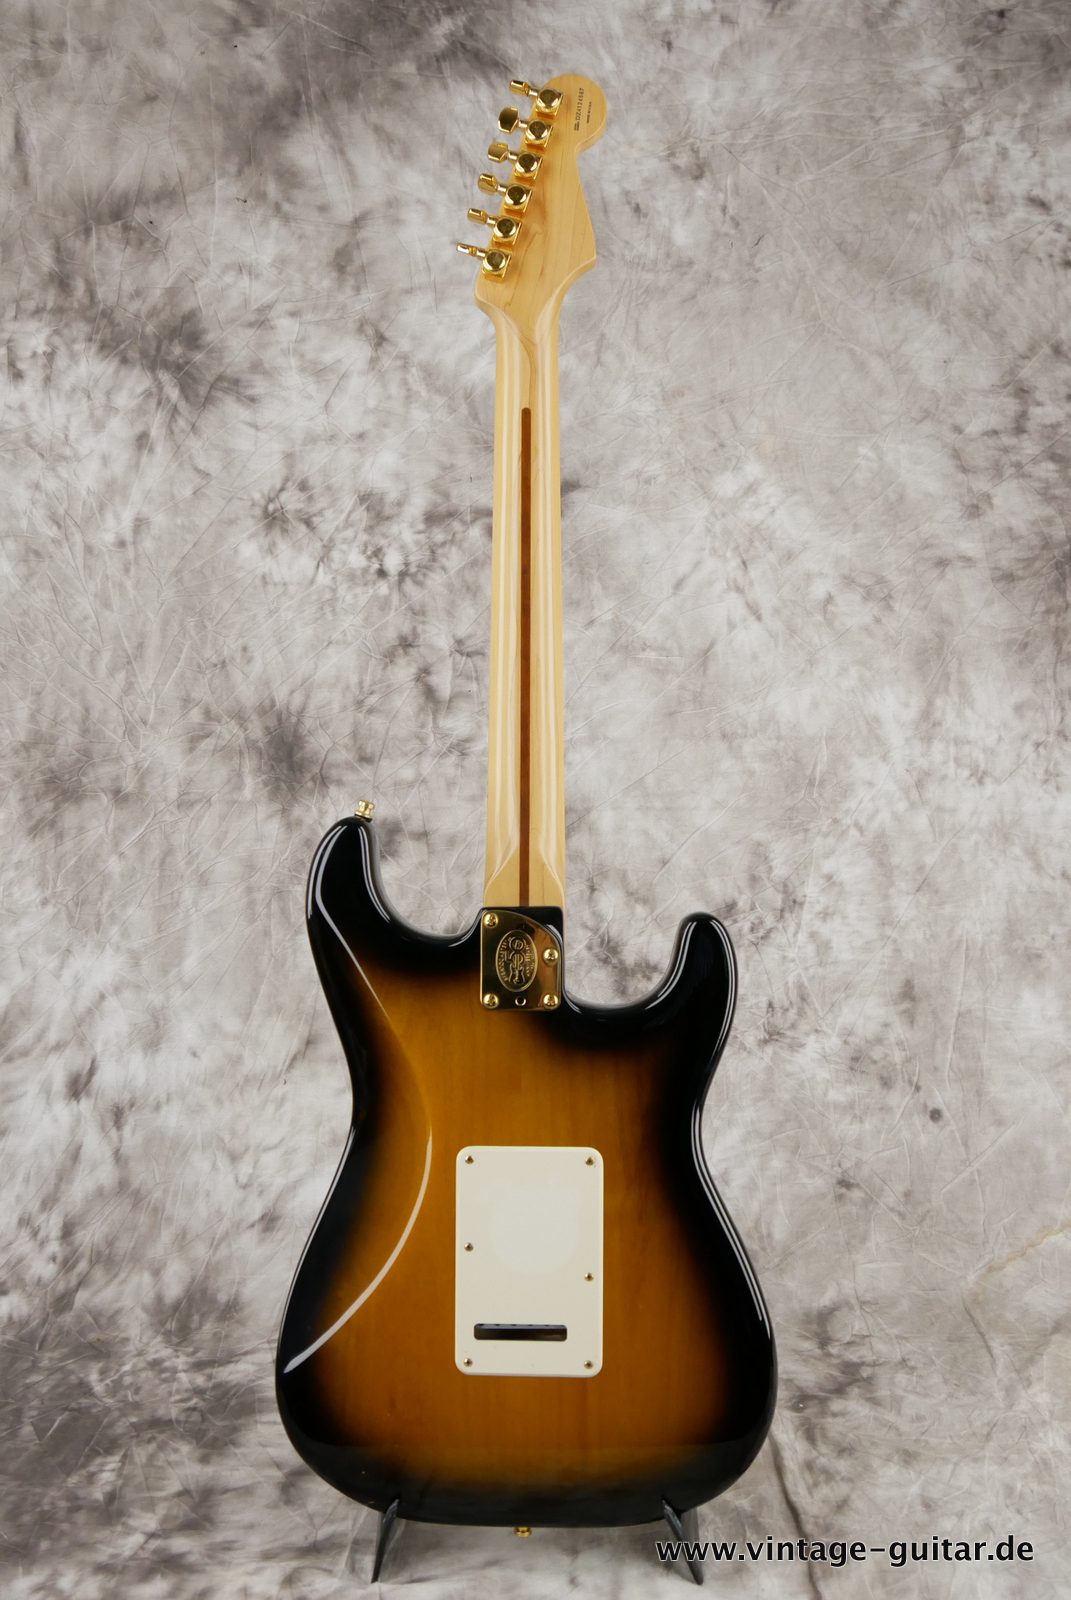 Fender_Stratocaster_deluxe_50th_anniversary__left_hand_sunburst_tweed_case_2004-002.JPG